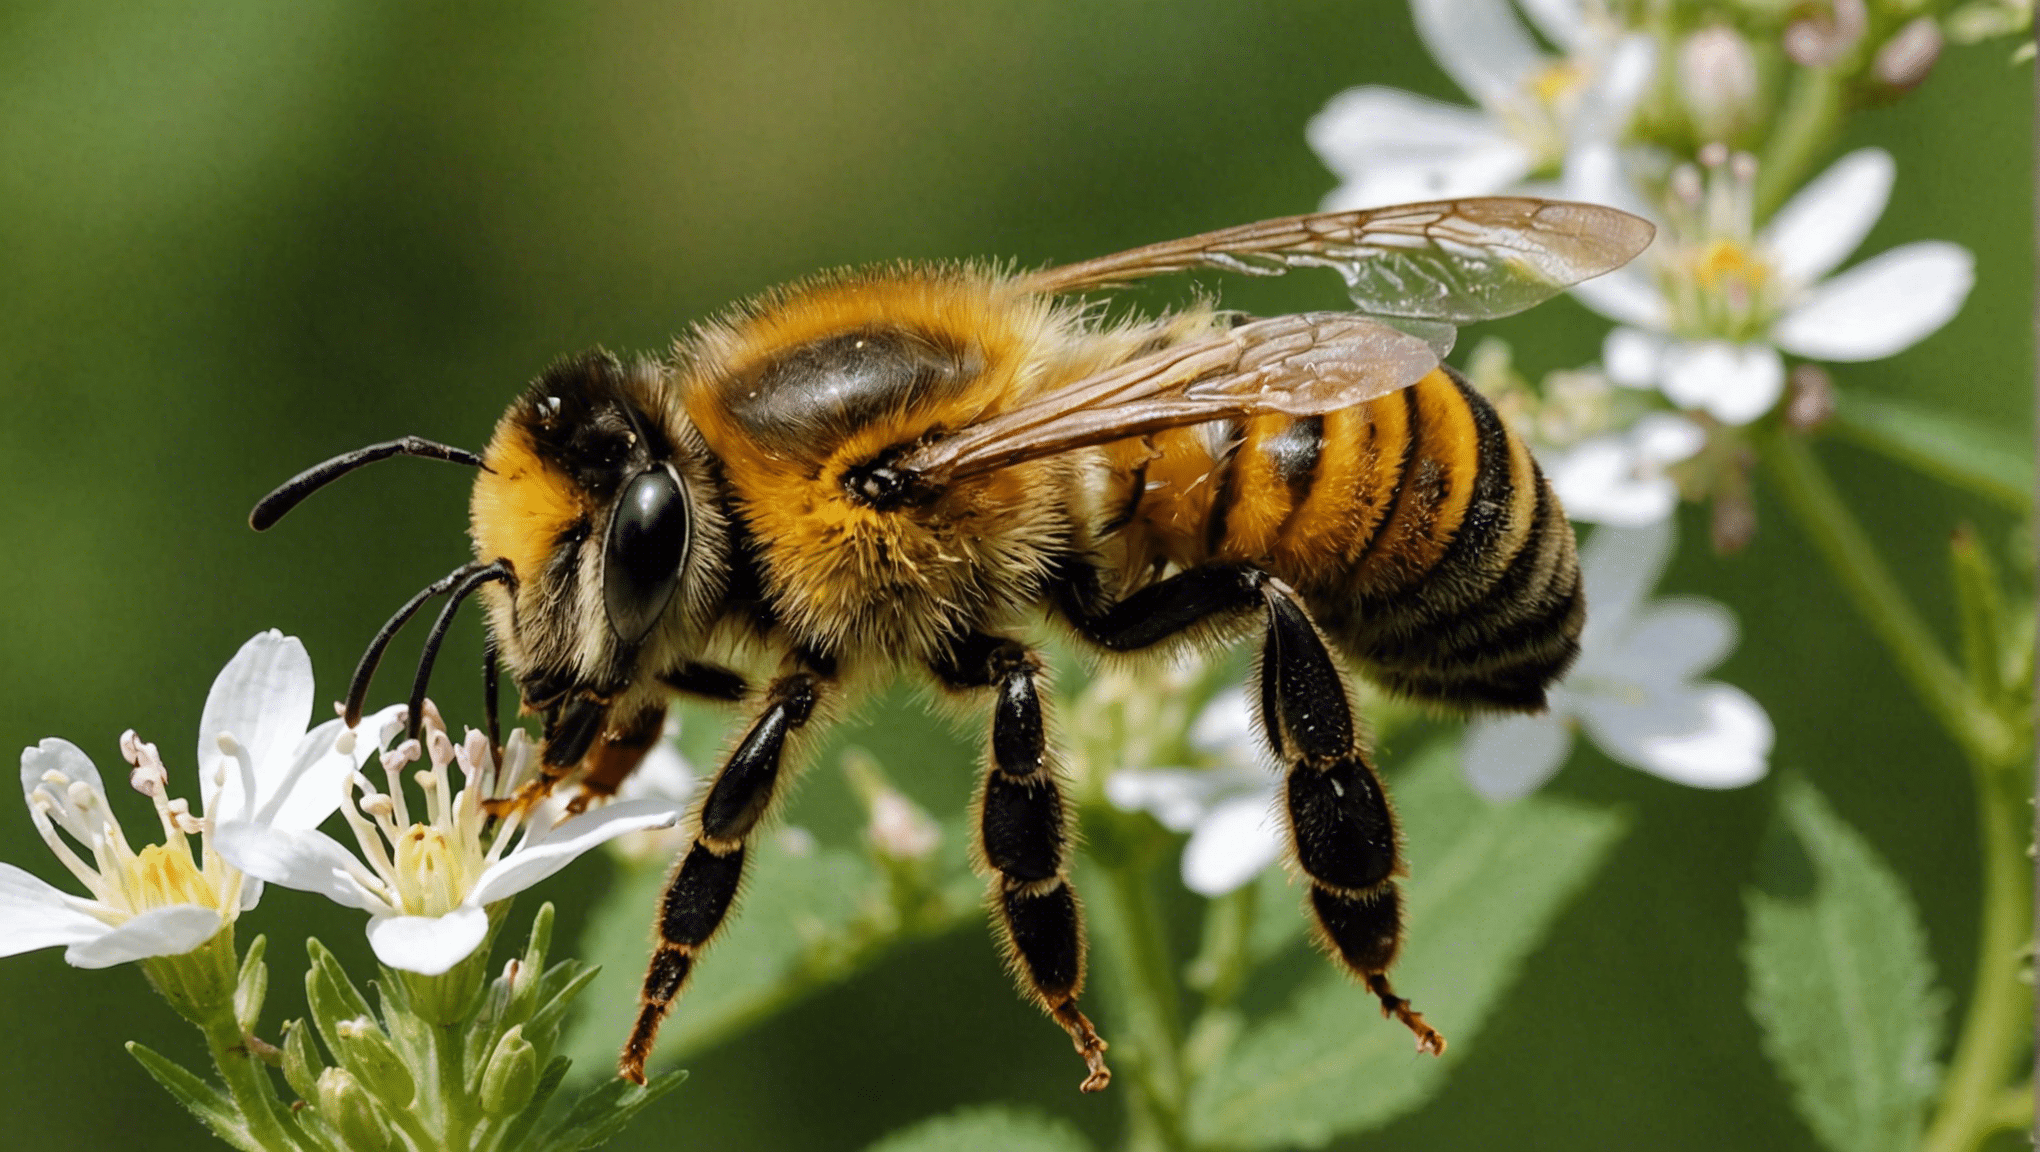 dowiedz się, dlaczego pszczoła odgrywa kluczową rolę jako strażnik różnorodności biologicznej i jak przyczynia się do zachowania naszego ekosystemu.